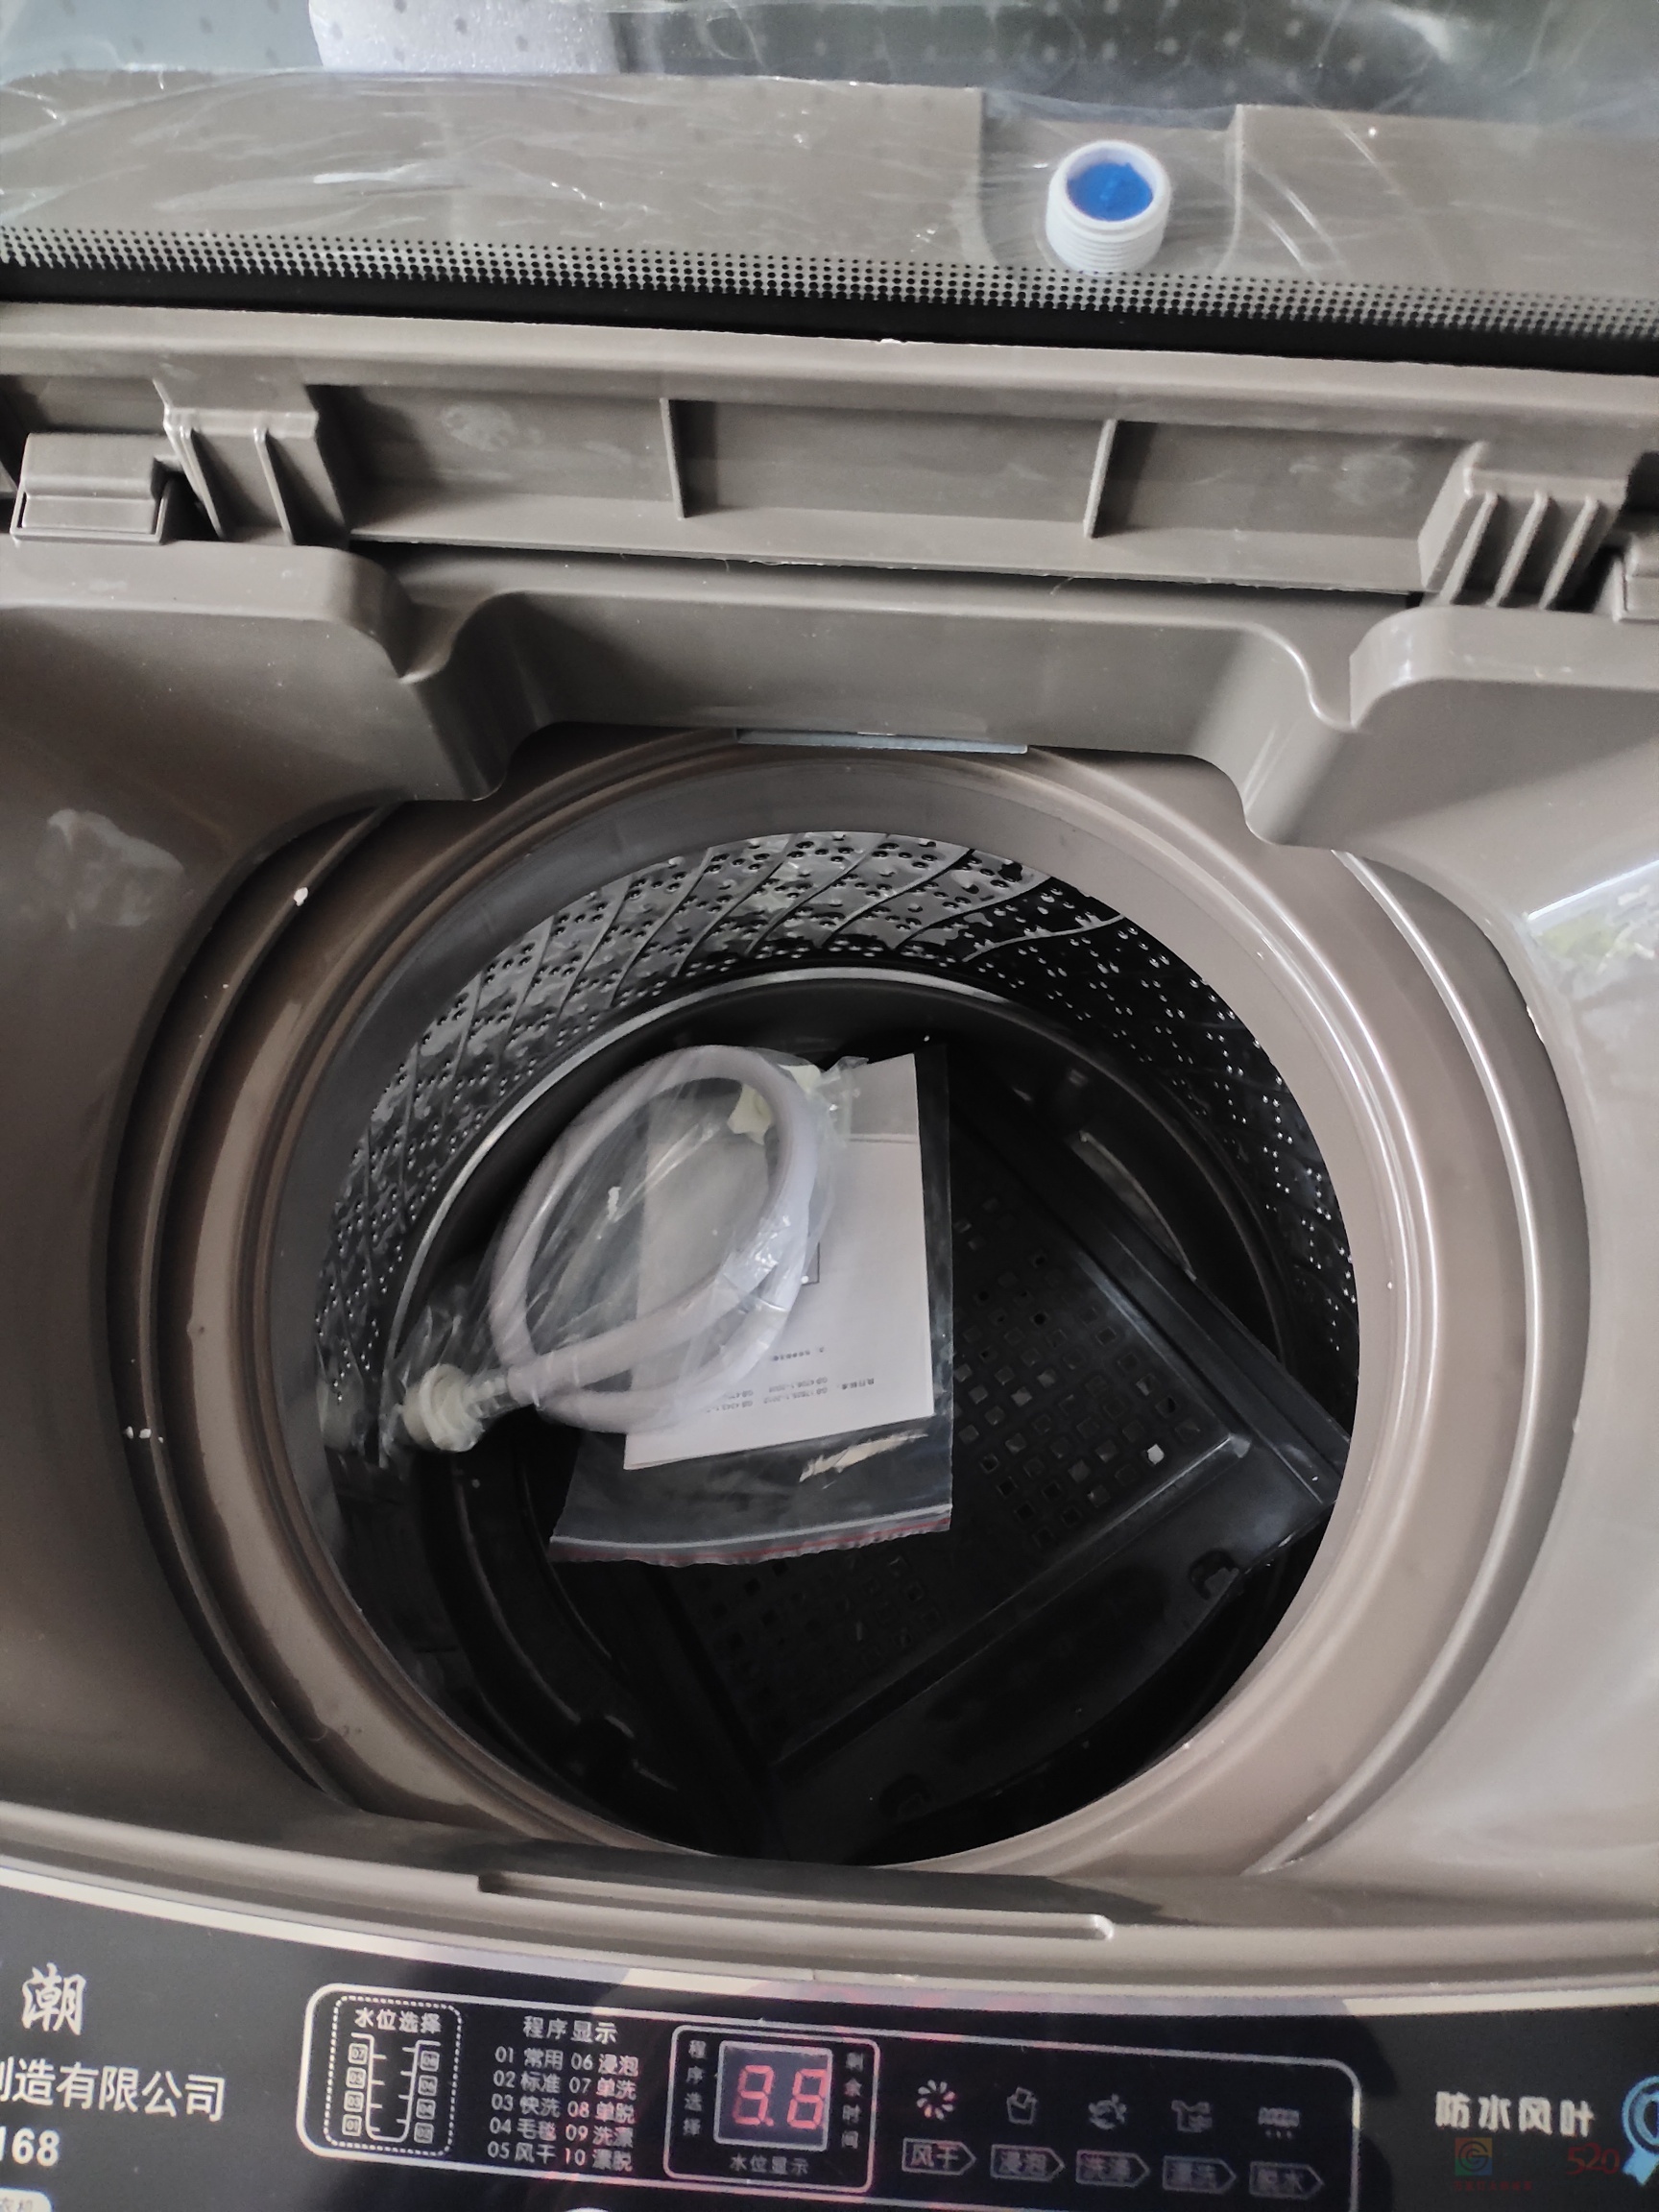 洗衣机处理788 / 作者:琼美新旧货市场 / 帖子ID:289817